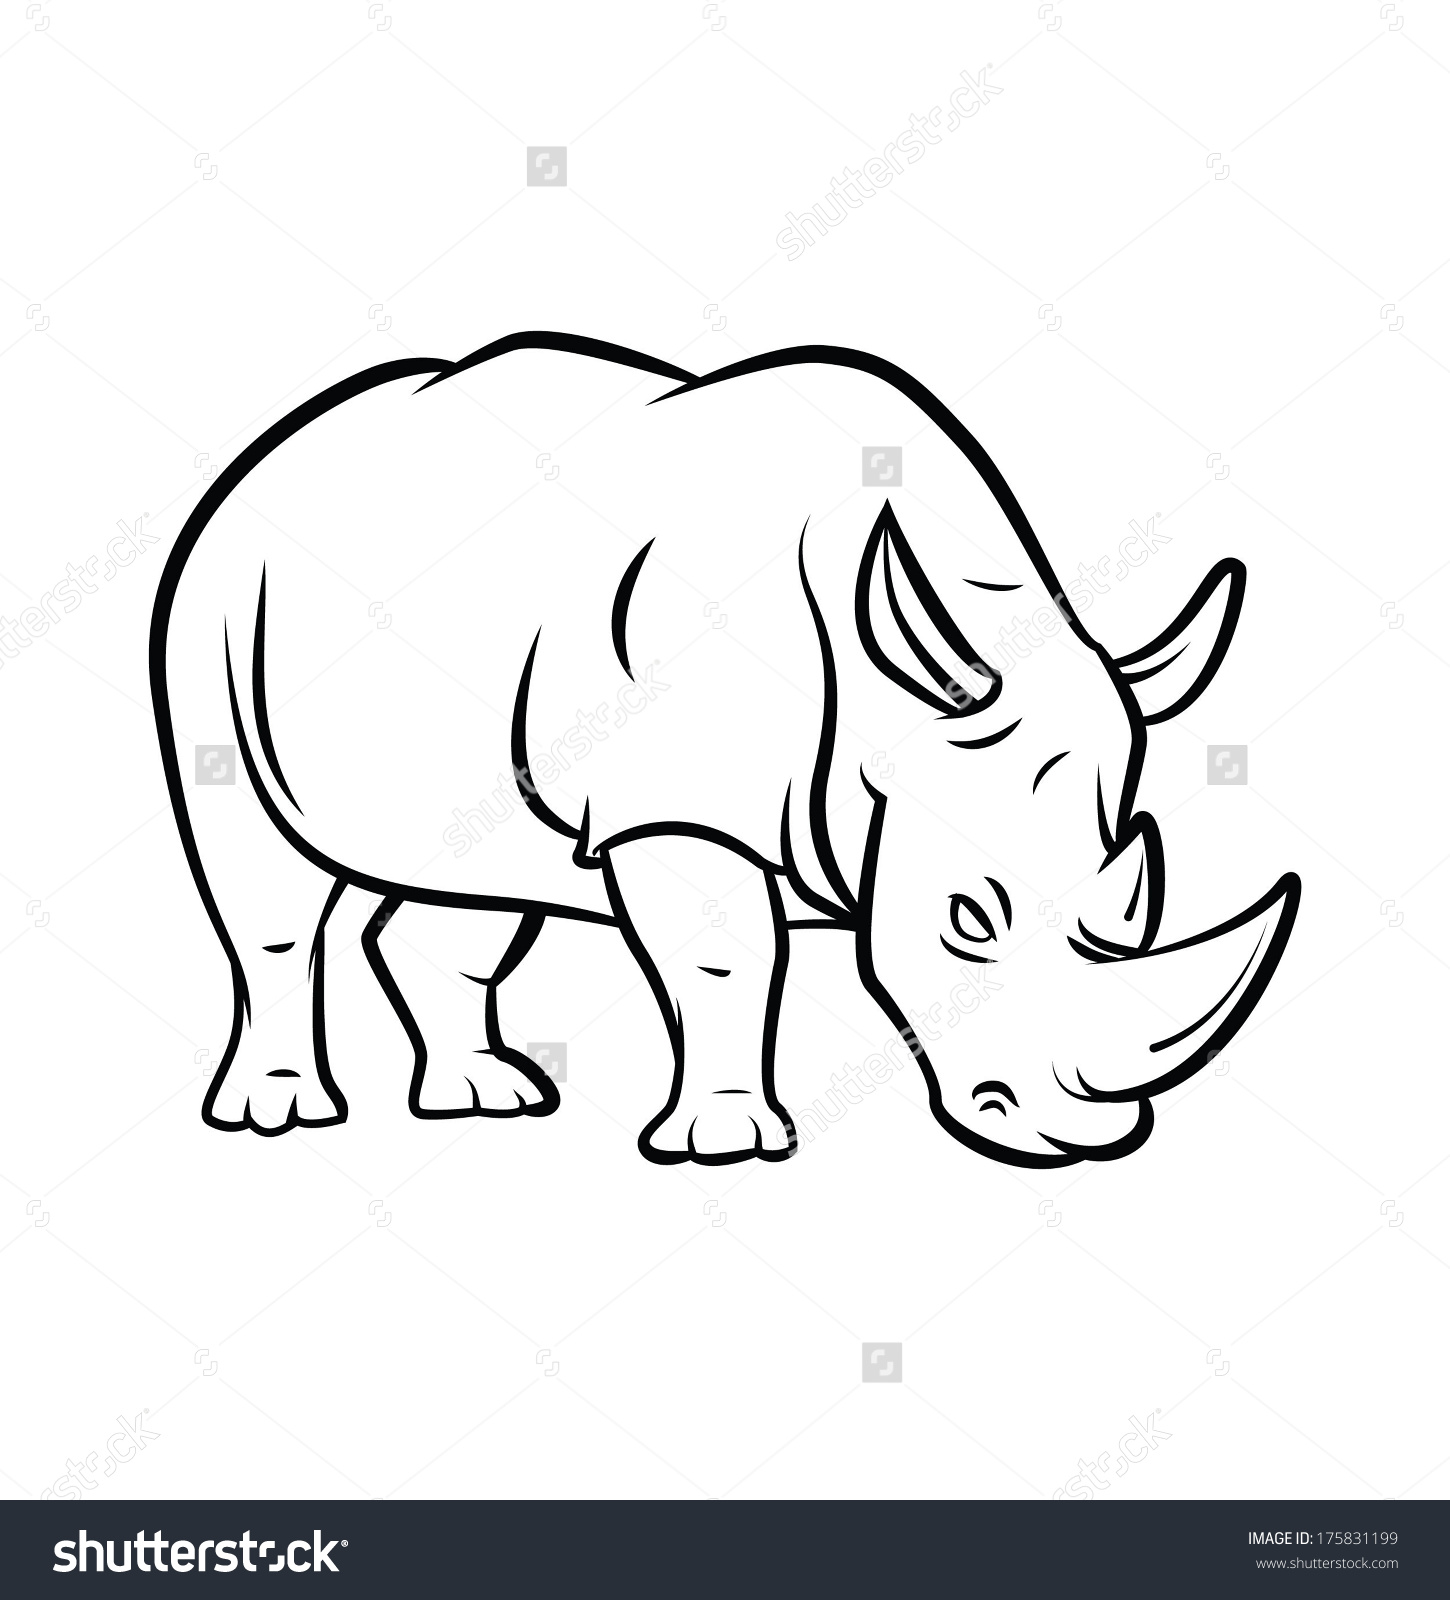 javan rhinoceros drawing